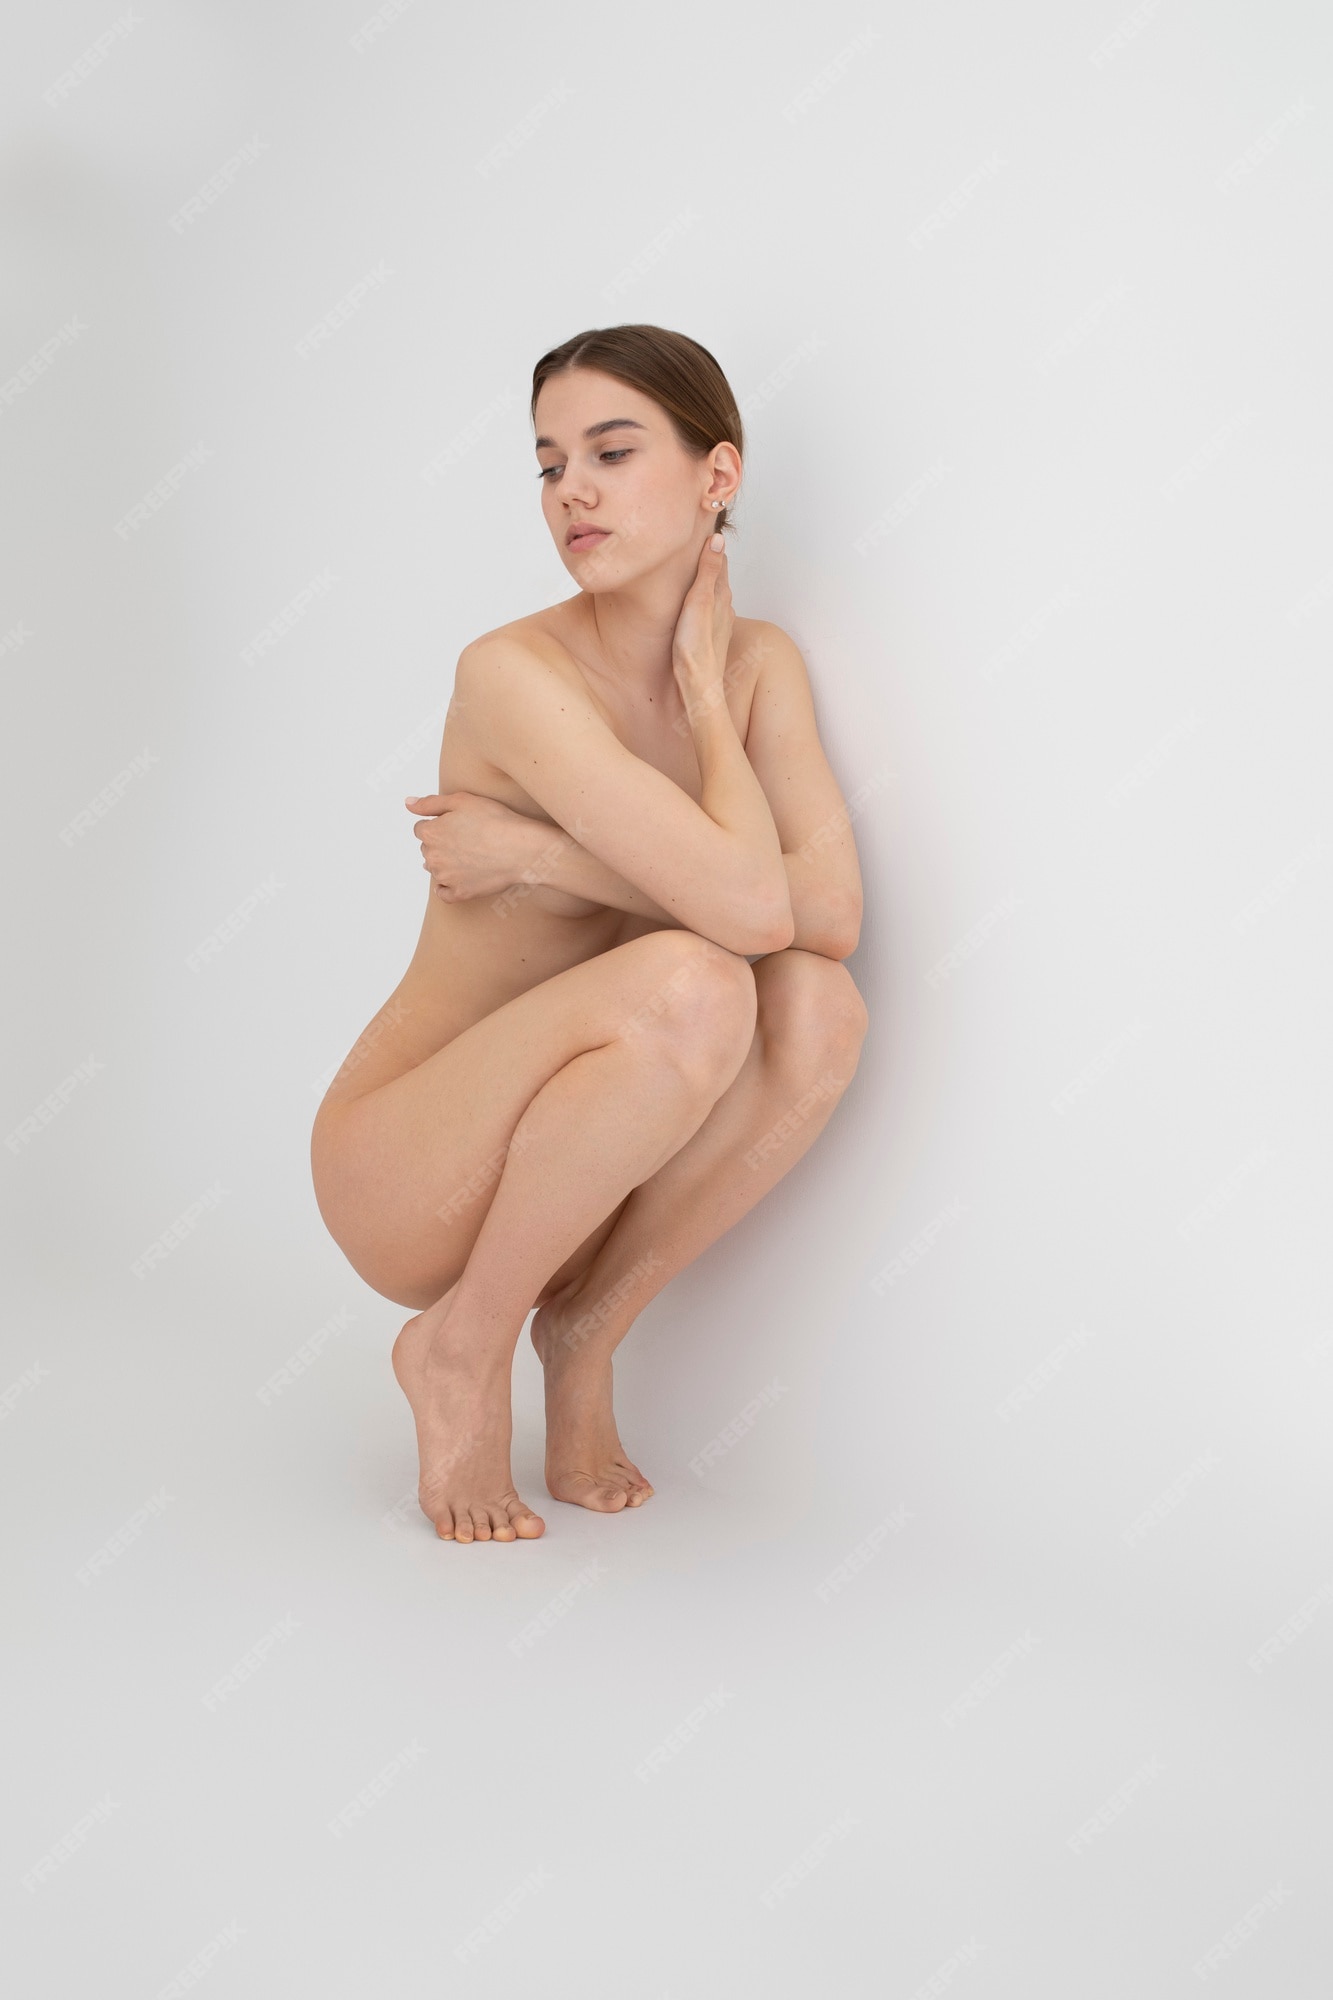 bob marcum recommends Full Female Nudity